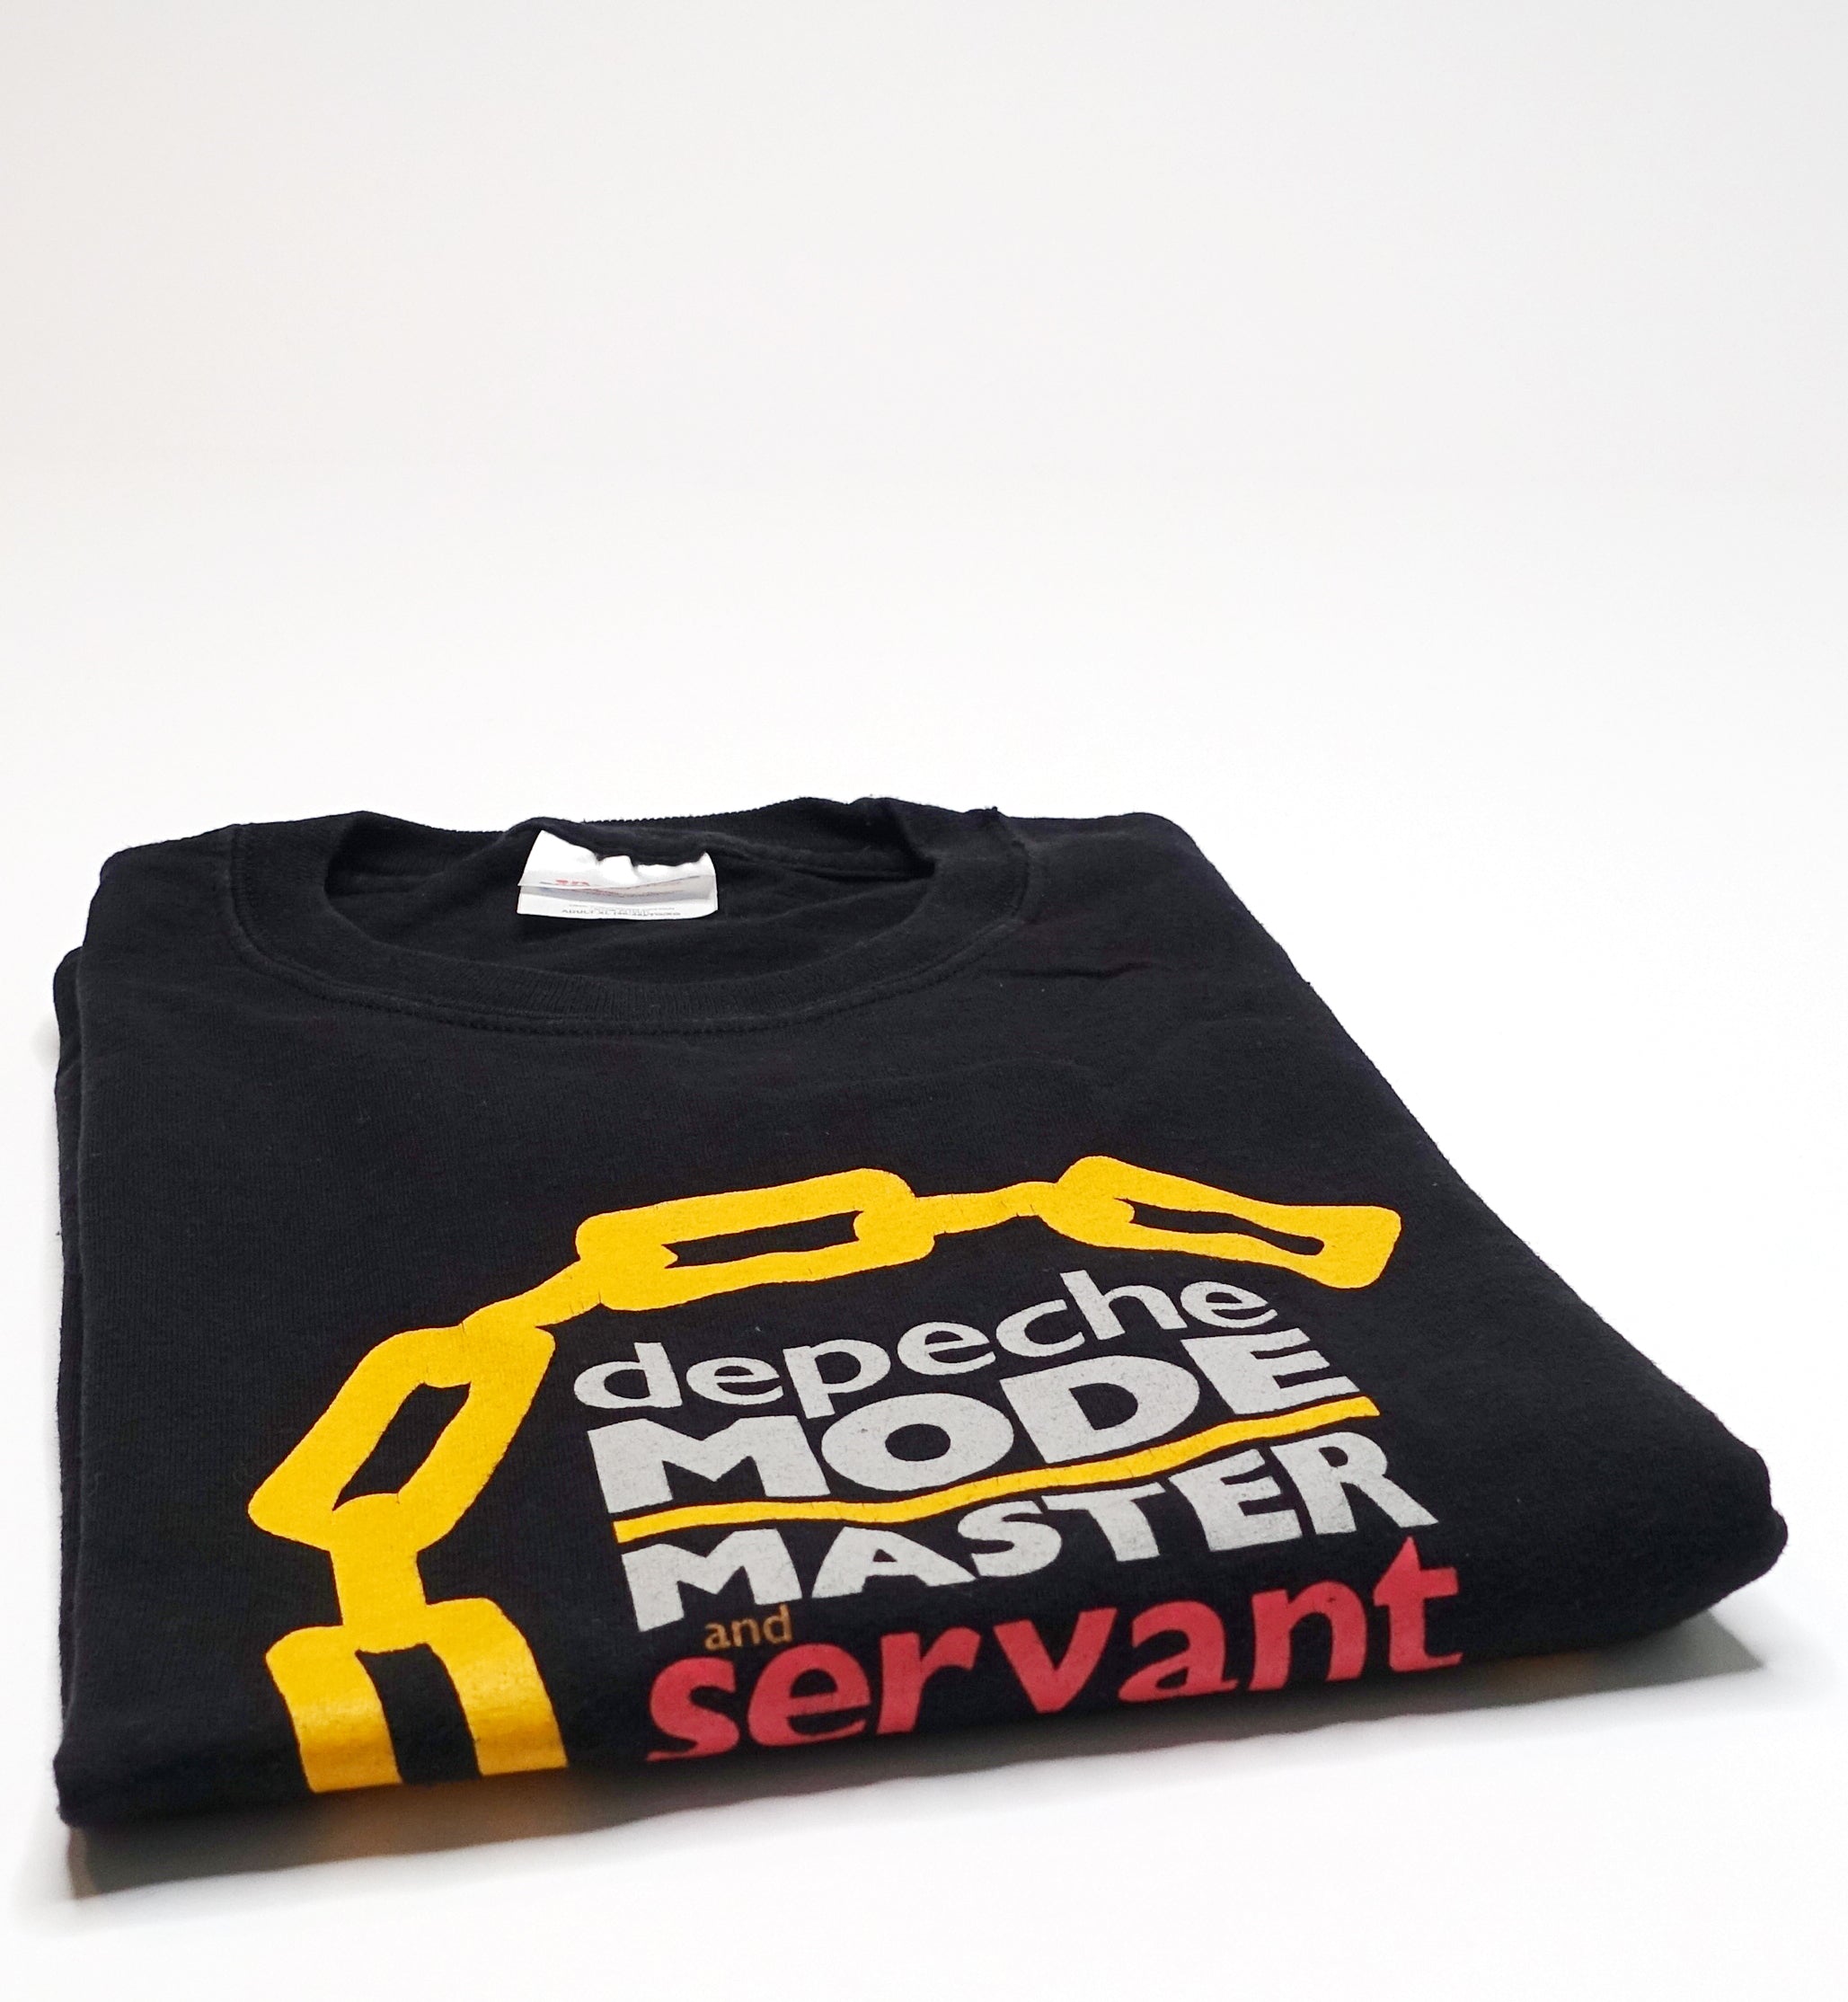 Depeche Mode – Master and Servant ©2005 Shirt Size XL